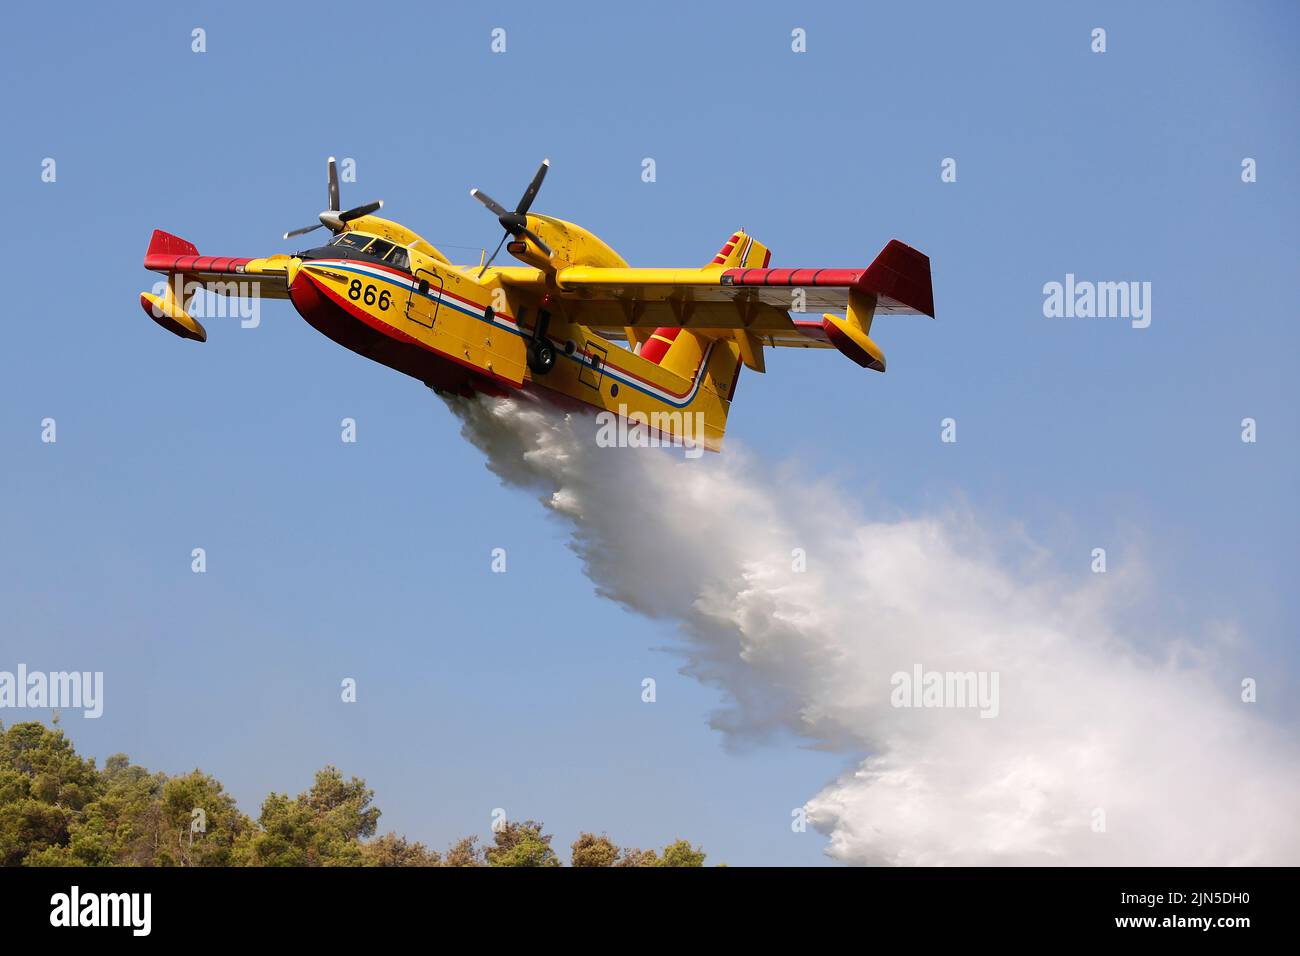 Une Force aérienne croate Canadair CL-415 libère de l'eau lorsqu'elle éteint un incendie de forêt dans la péninsule de Peljesec, dans le sud de la Croatie. Banque D'Images